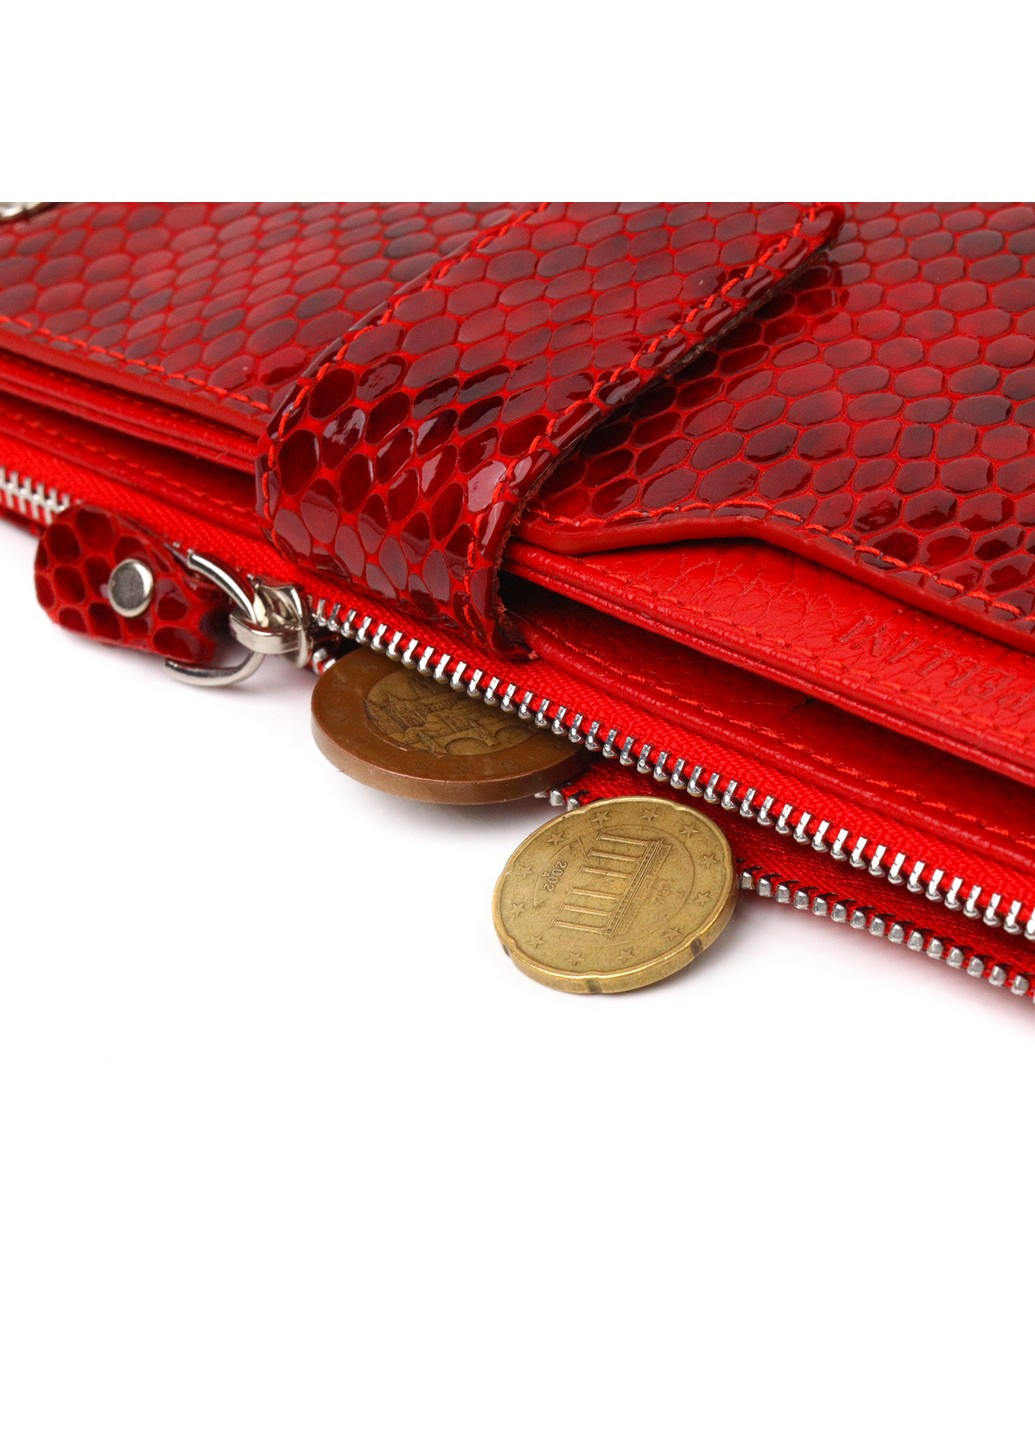 Жіночий шкіряний гаманець 10х18,7х2 см Canpellini (259245235)